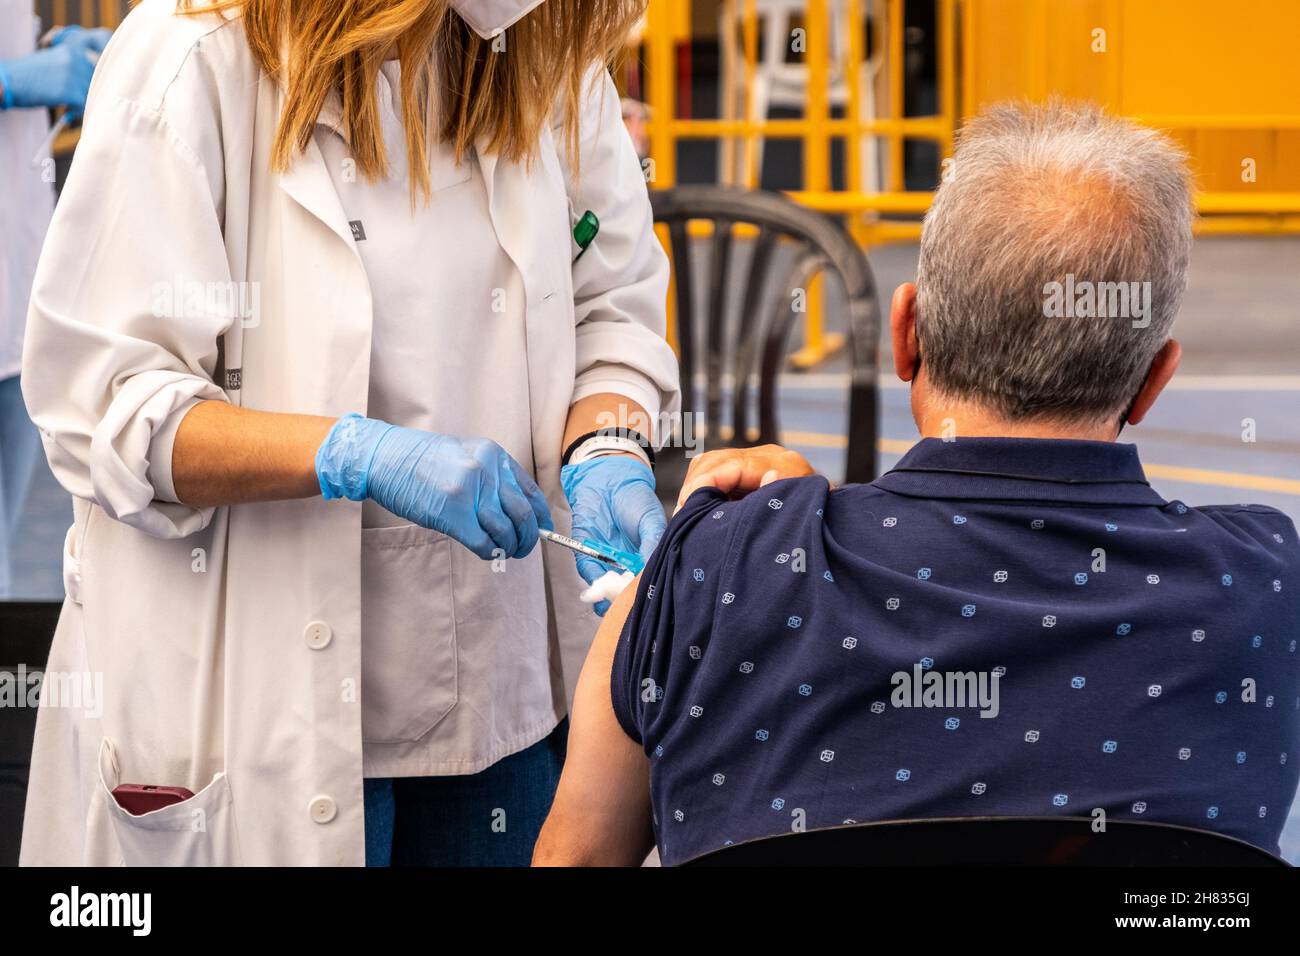 Valencia, Spagna; 6 aprile 2021: L'operatore sanitario inietta il vaccino anticovida ad un paziente presso un centro di vaccinazione. Vaccinazione anticovideo ca Foto Stock